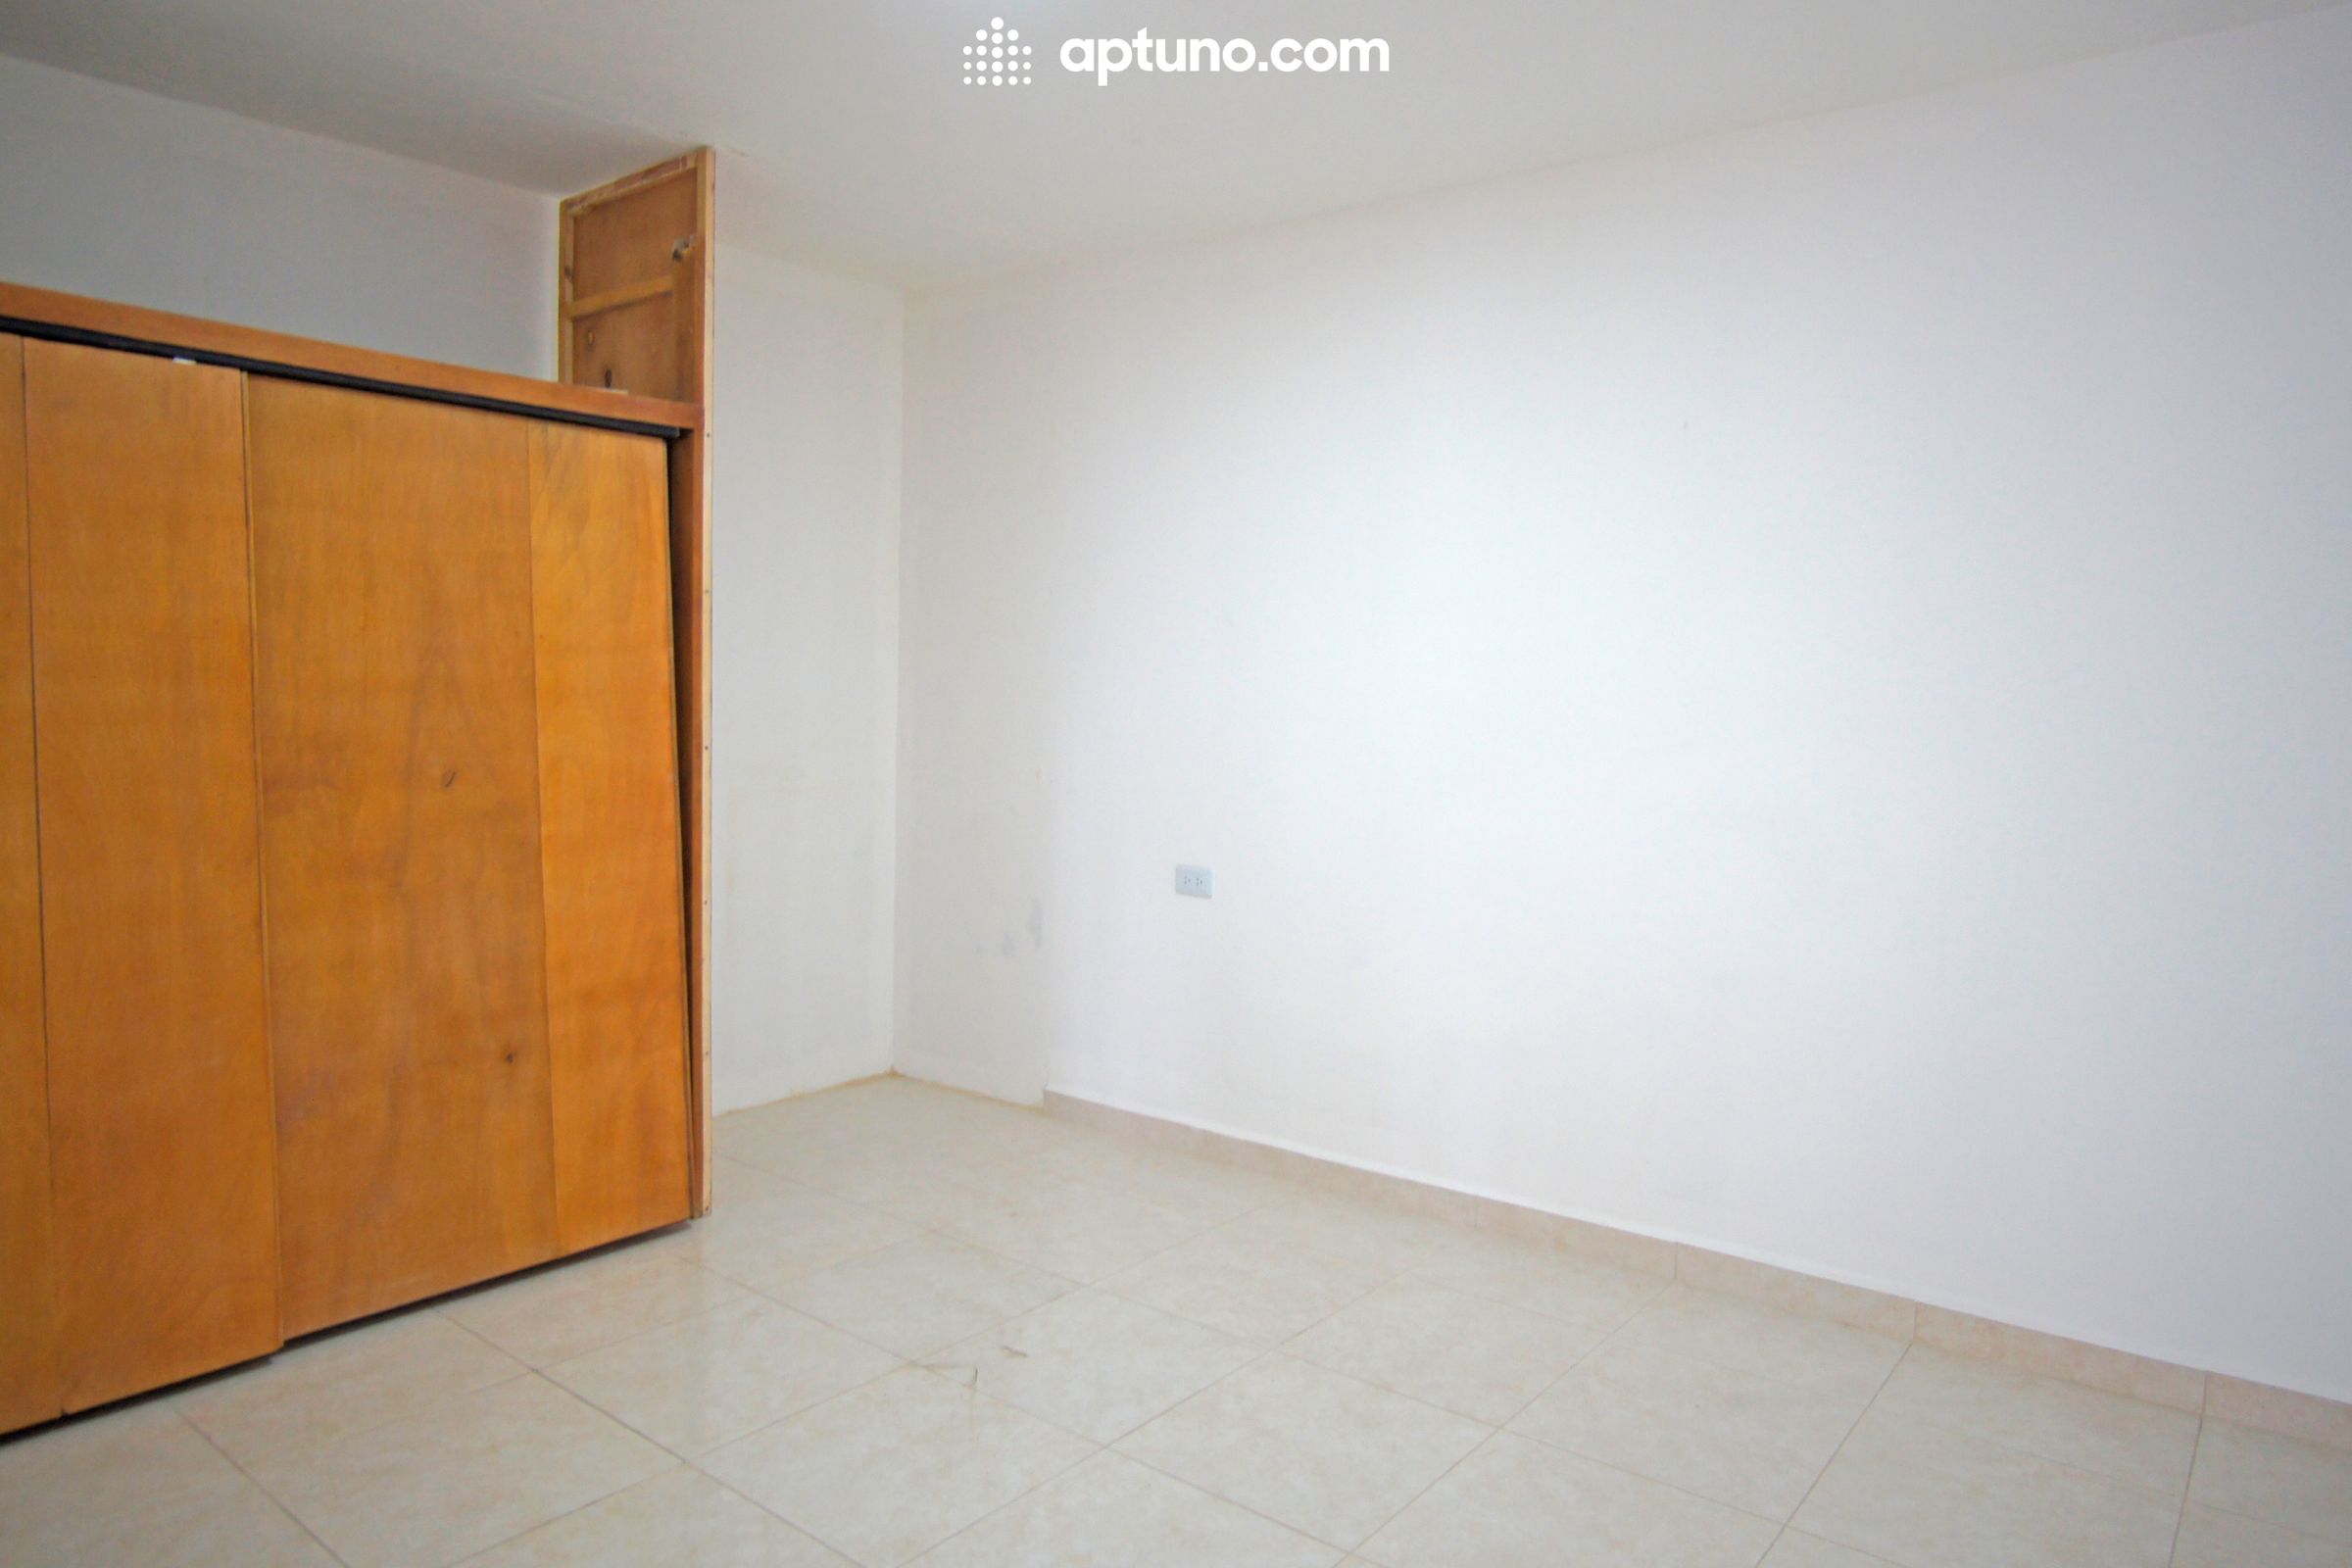 Apartamento en arriendo Colombia 50 m² - $ 1.500.000,00